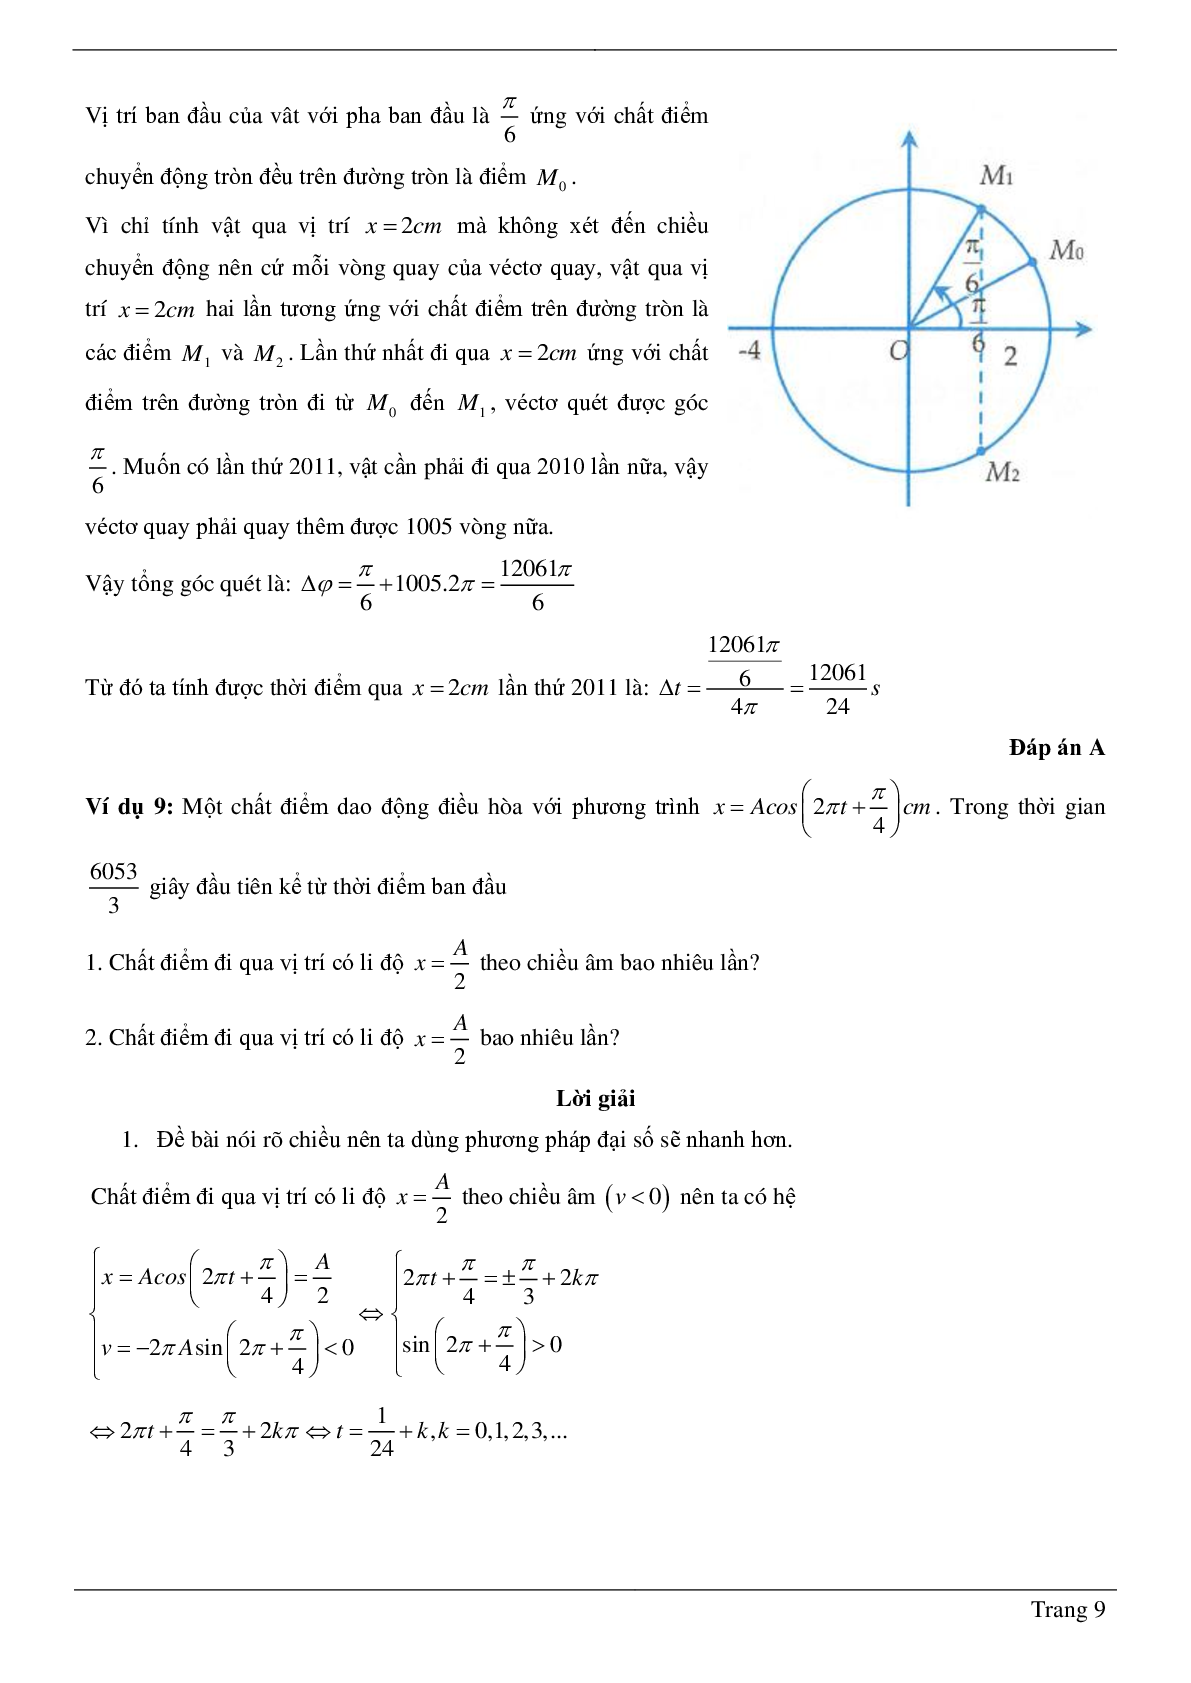 Các dạng bài toán chương Dao động cơ môn Vật lý lớp 12 (trang 9)